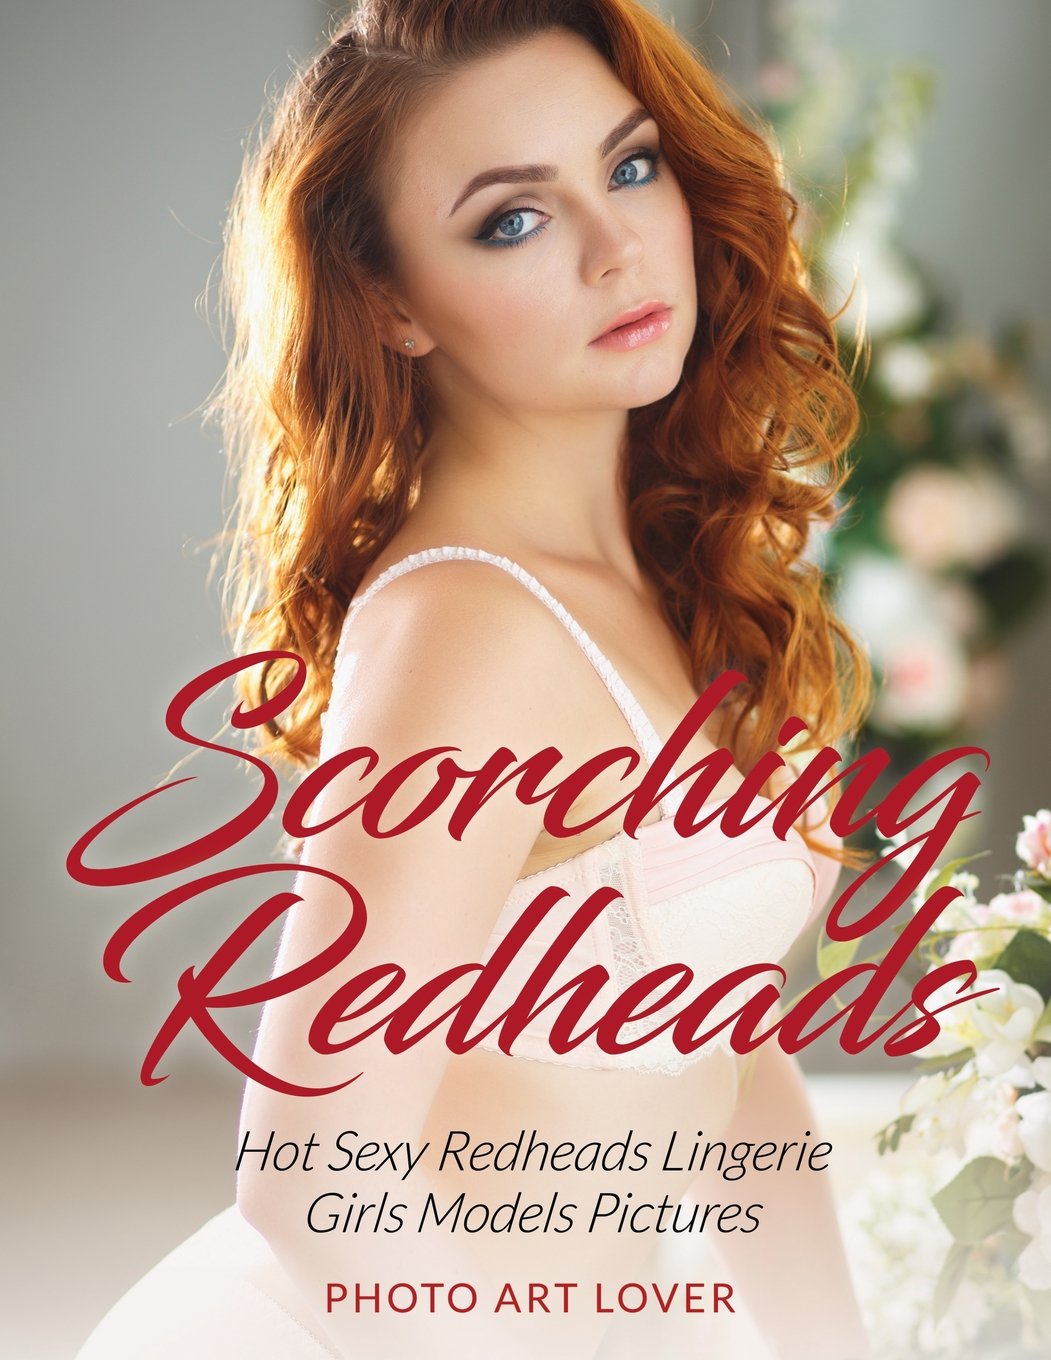 Redhead girls lingerie models